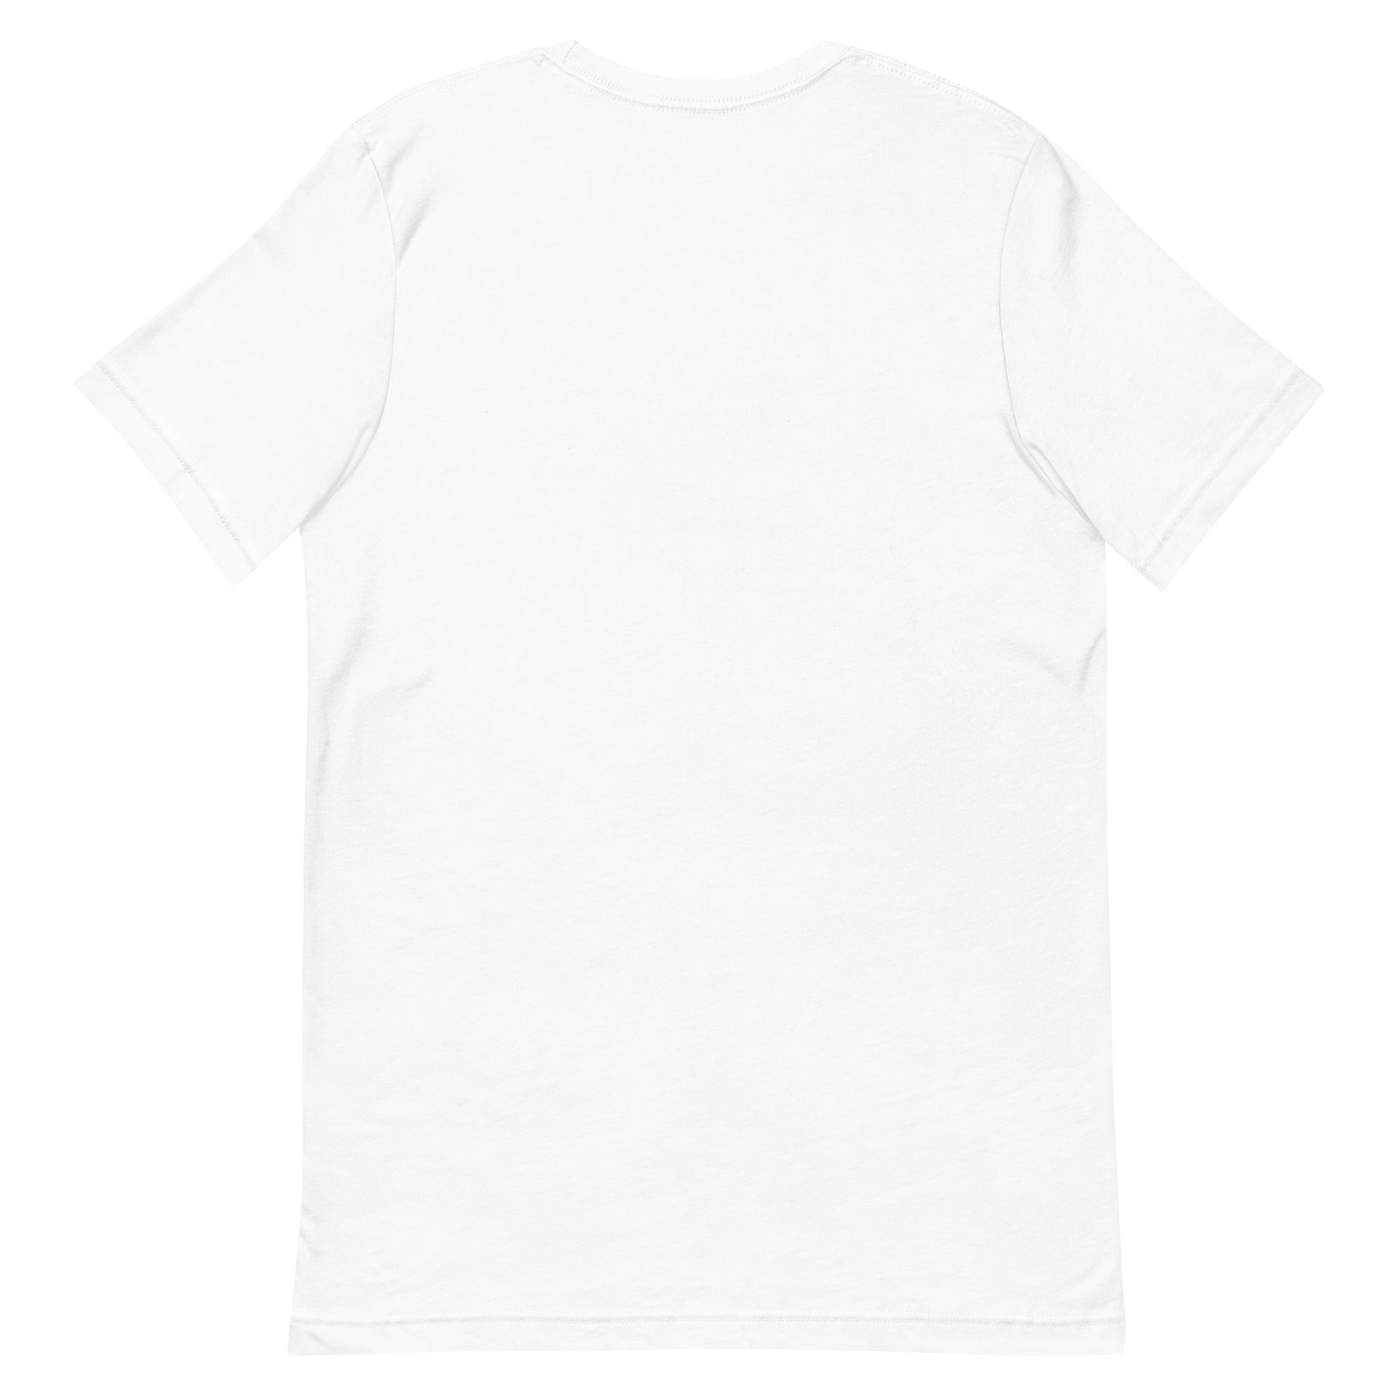 Handsome and Gretyl "Dream" White Maze Unisex t-shirt